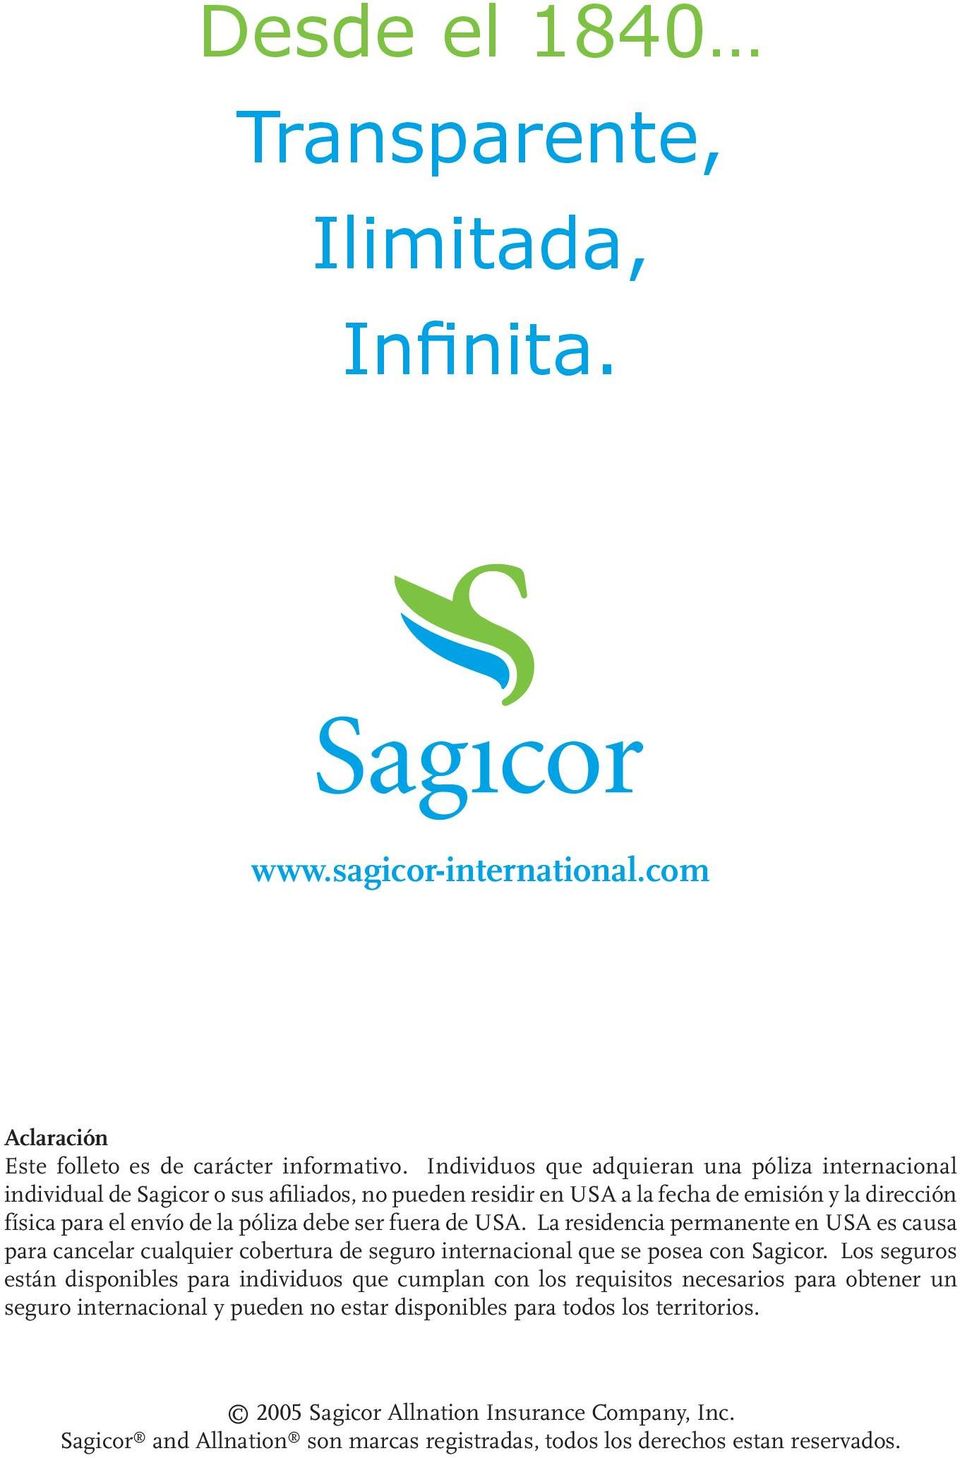 fuera de USA. La residencia permanente en USA es causa para cancelar cualquier cobertura de seguro internacional que se posea con Sagicor.